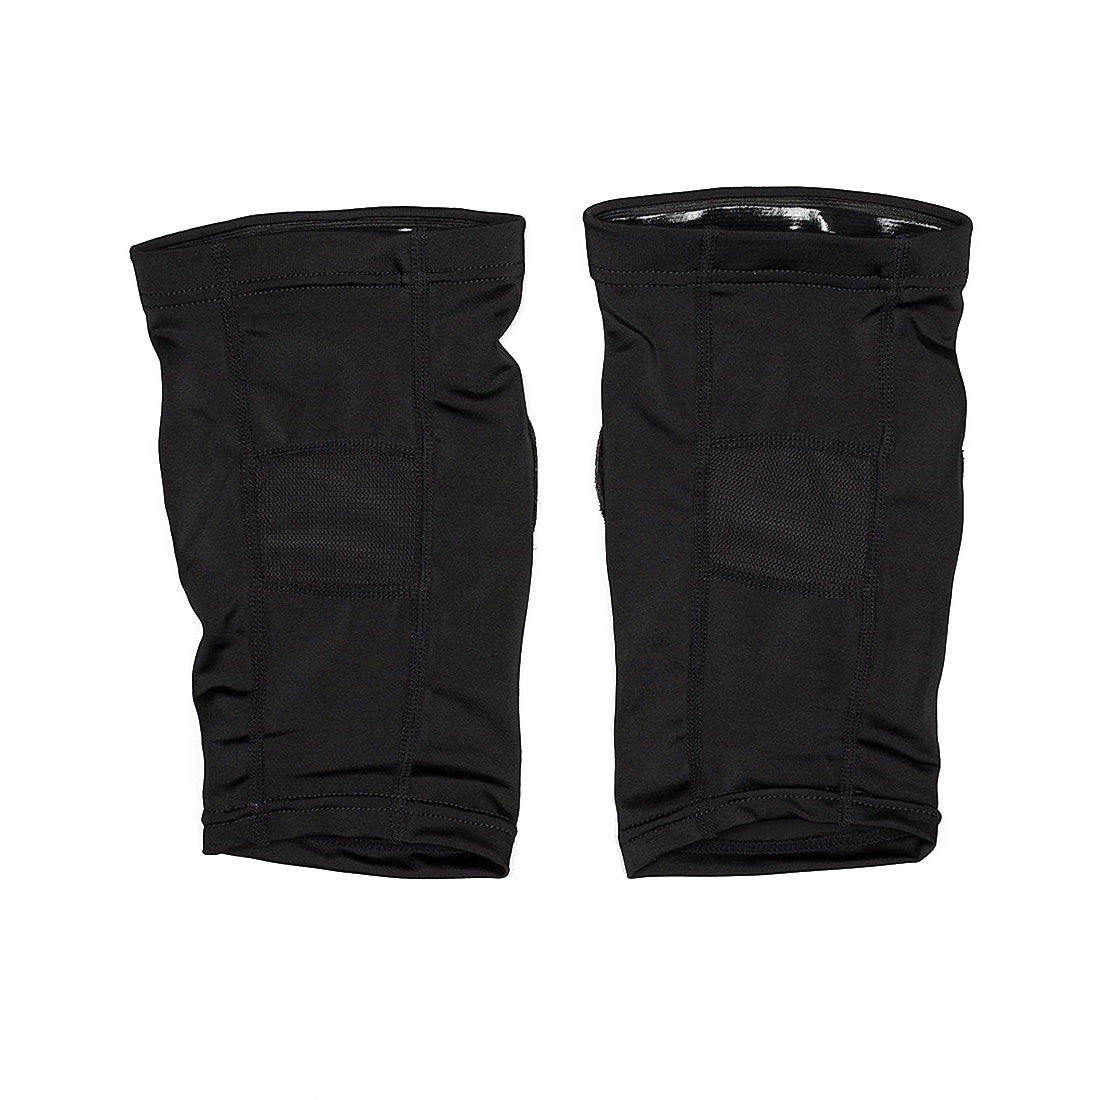 REKD Pro Knee Gaskets Protective Gear